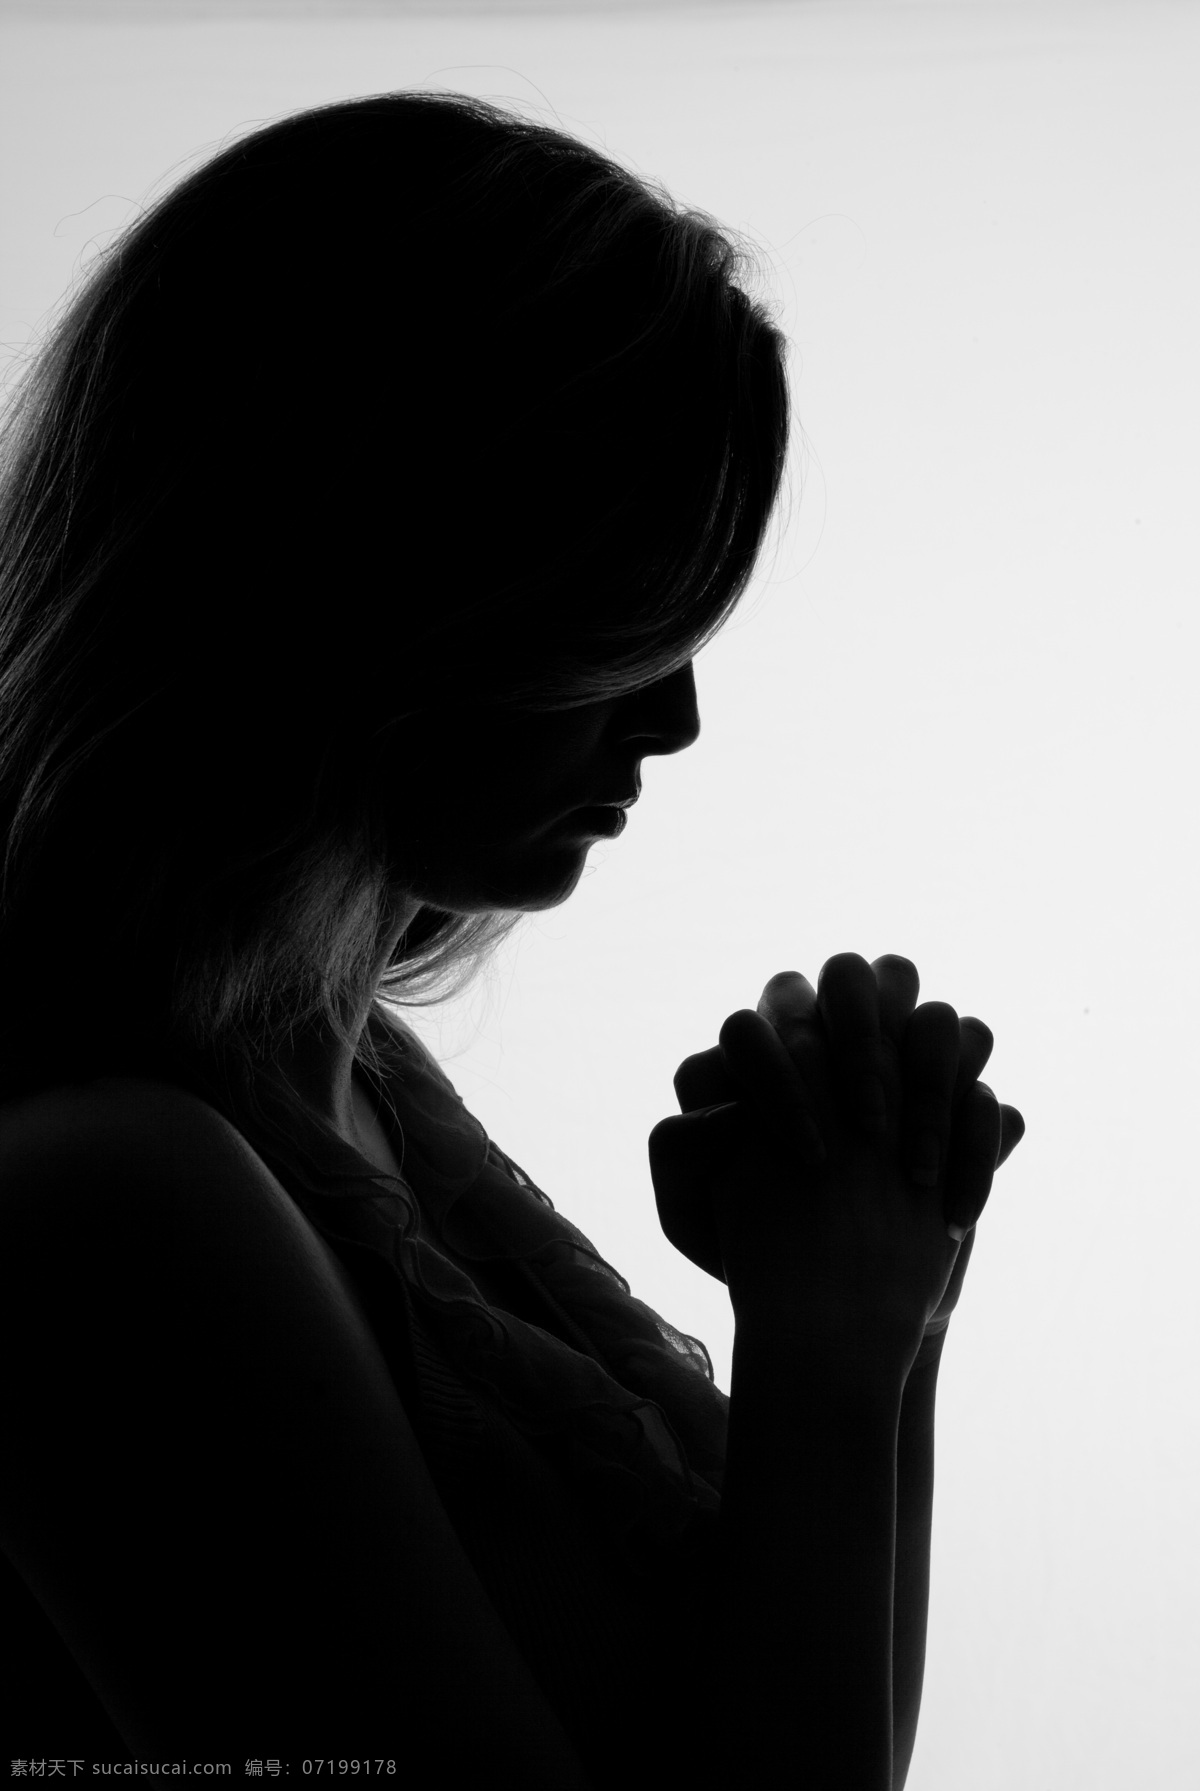 虔诚 祈祷 女人 祈祷的美女 祷告 虔诚祈祷 祈祷手势 生活人物 人物图片